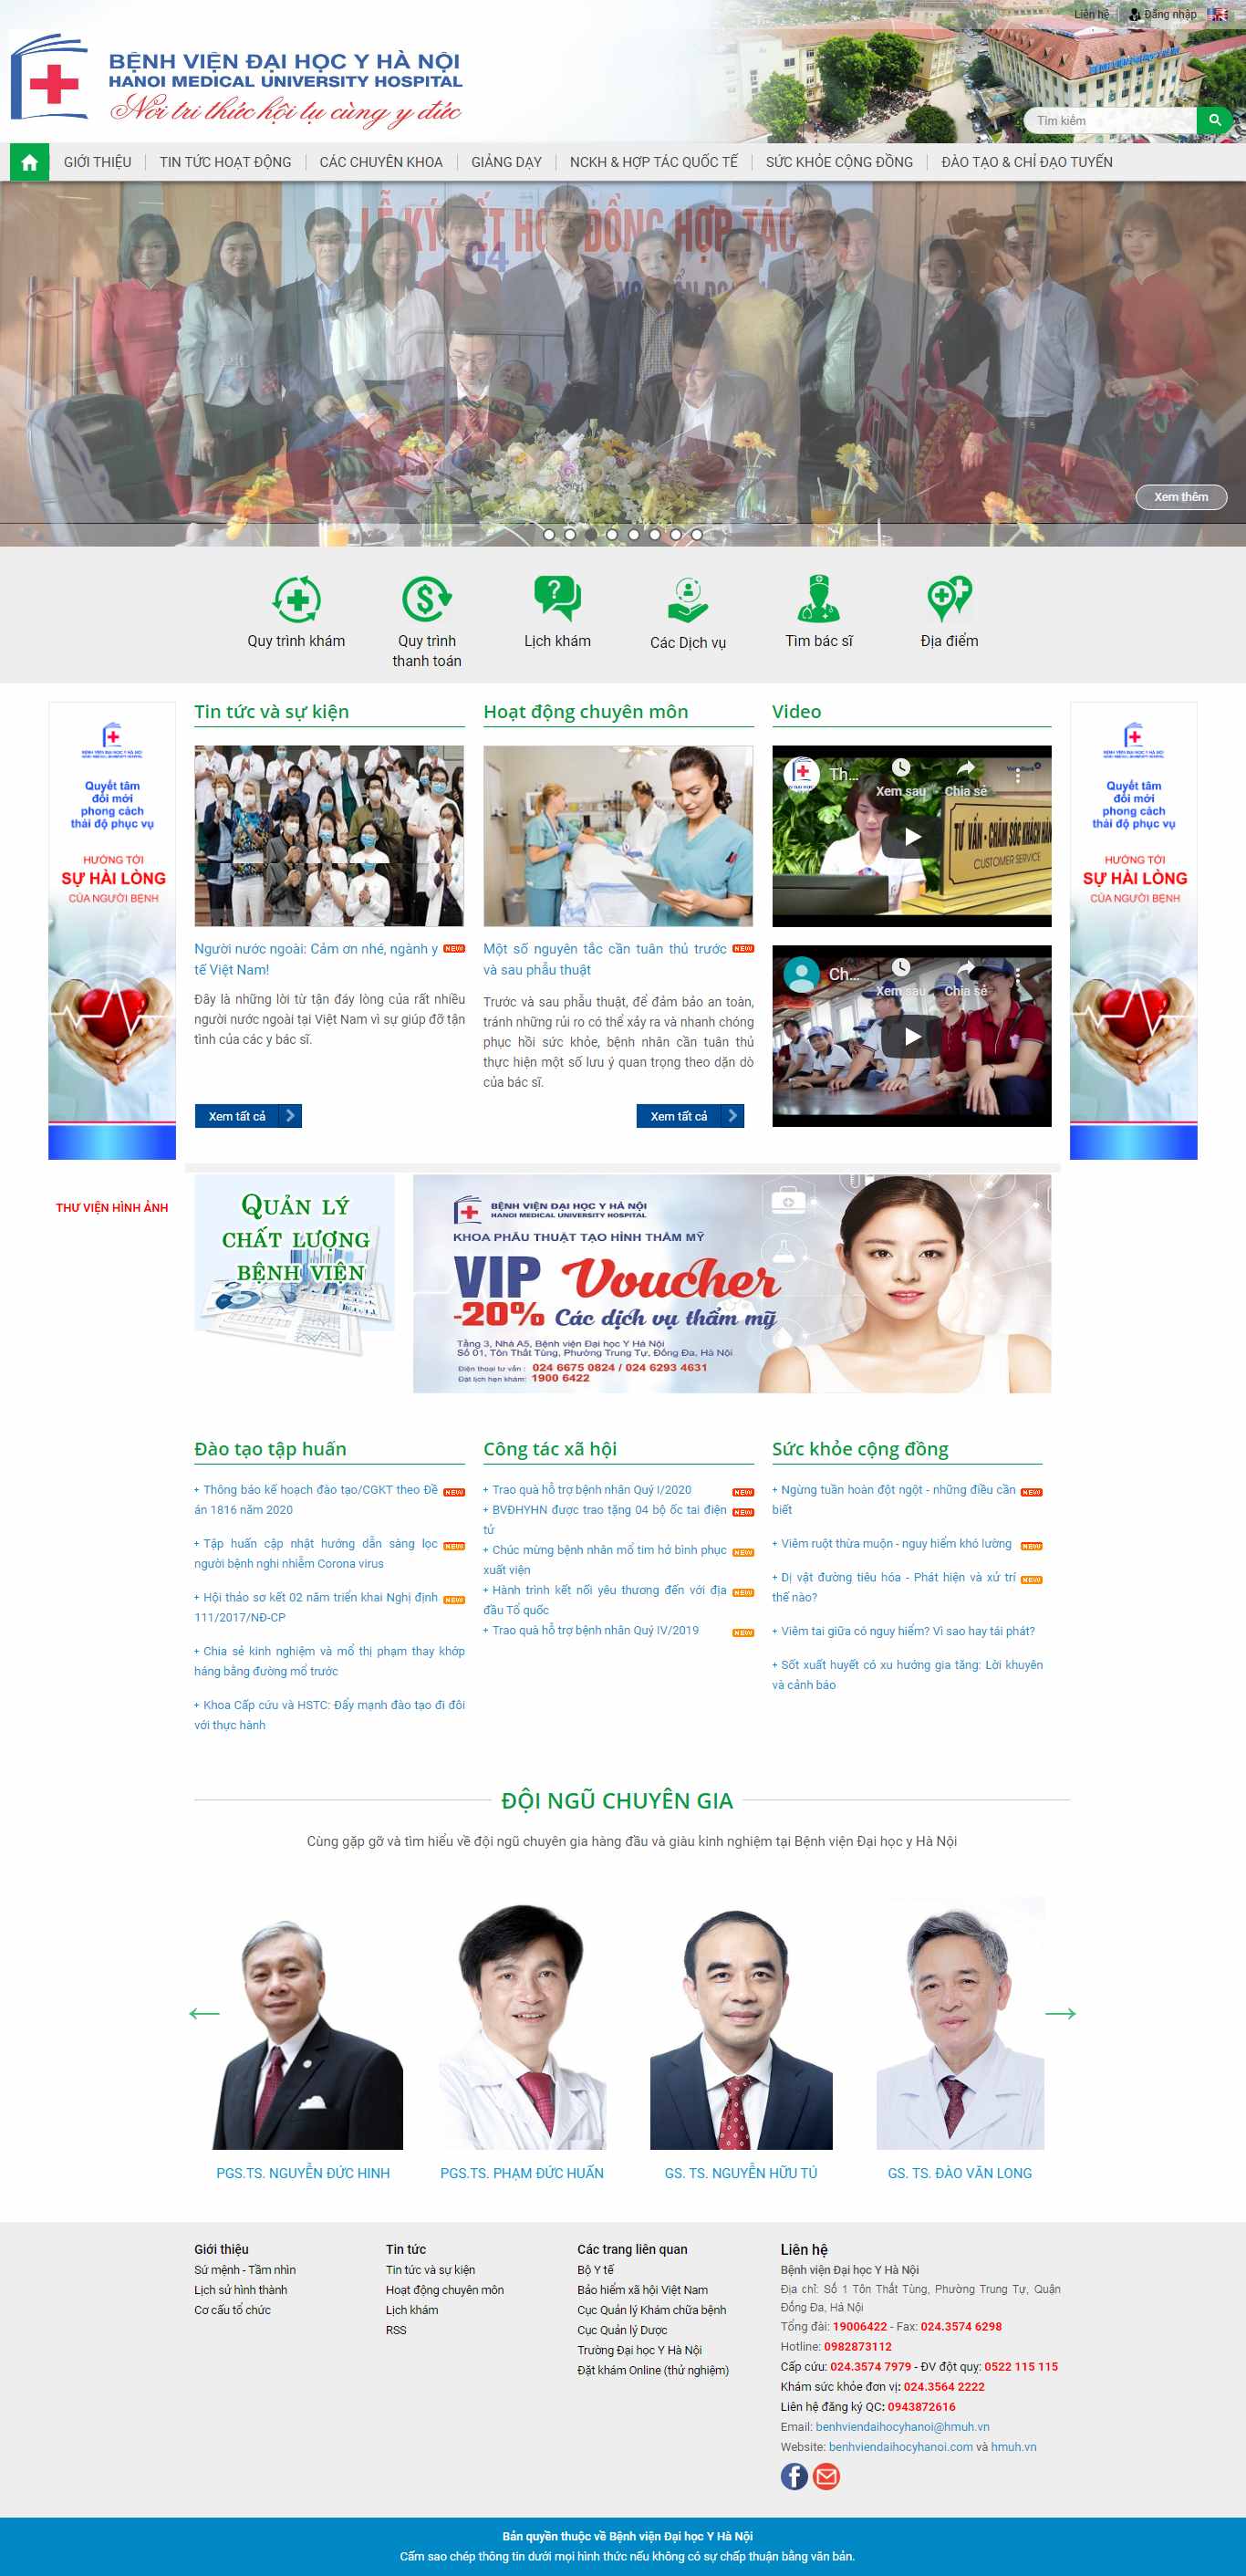 Thiết kế Website bệnh viện - benhviendaihocyhanoi.com